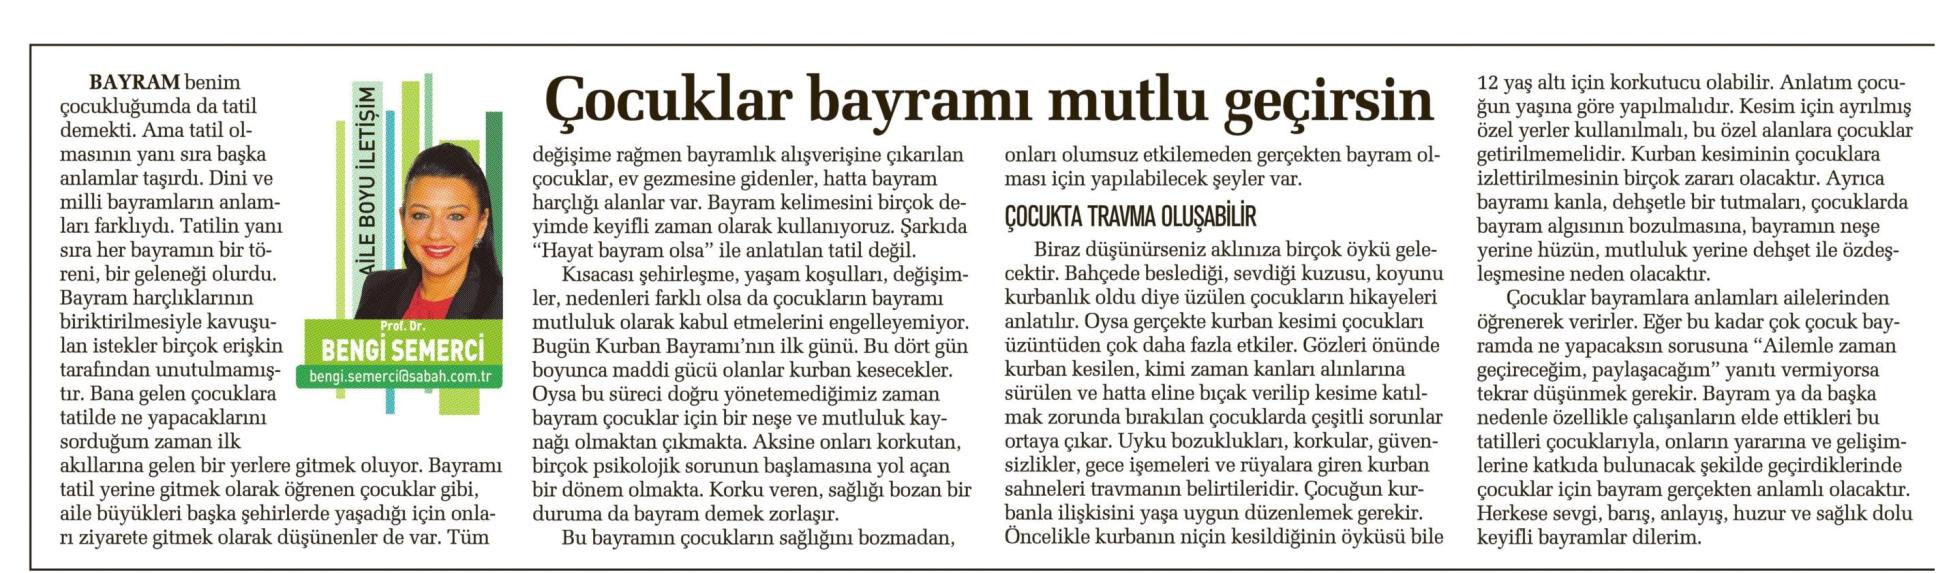 Çocuklar bayramı mutlu geçirsin - SABAH CUMARTESİ 04.10.2014